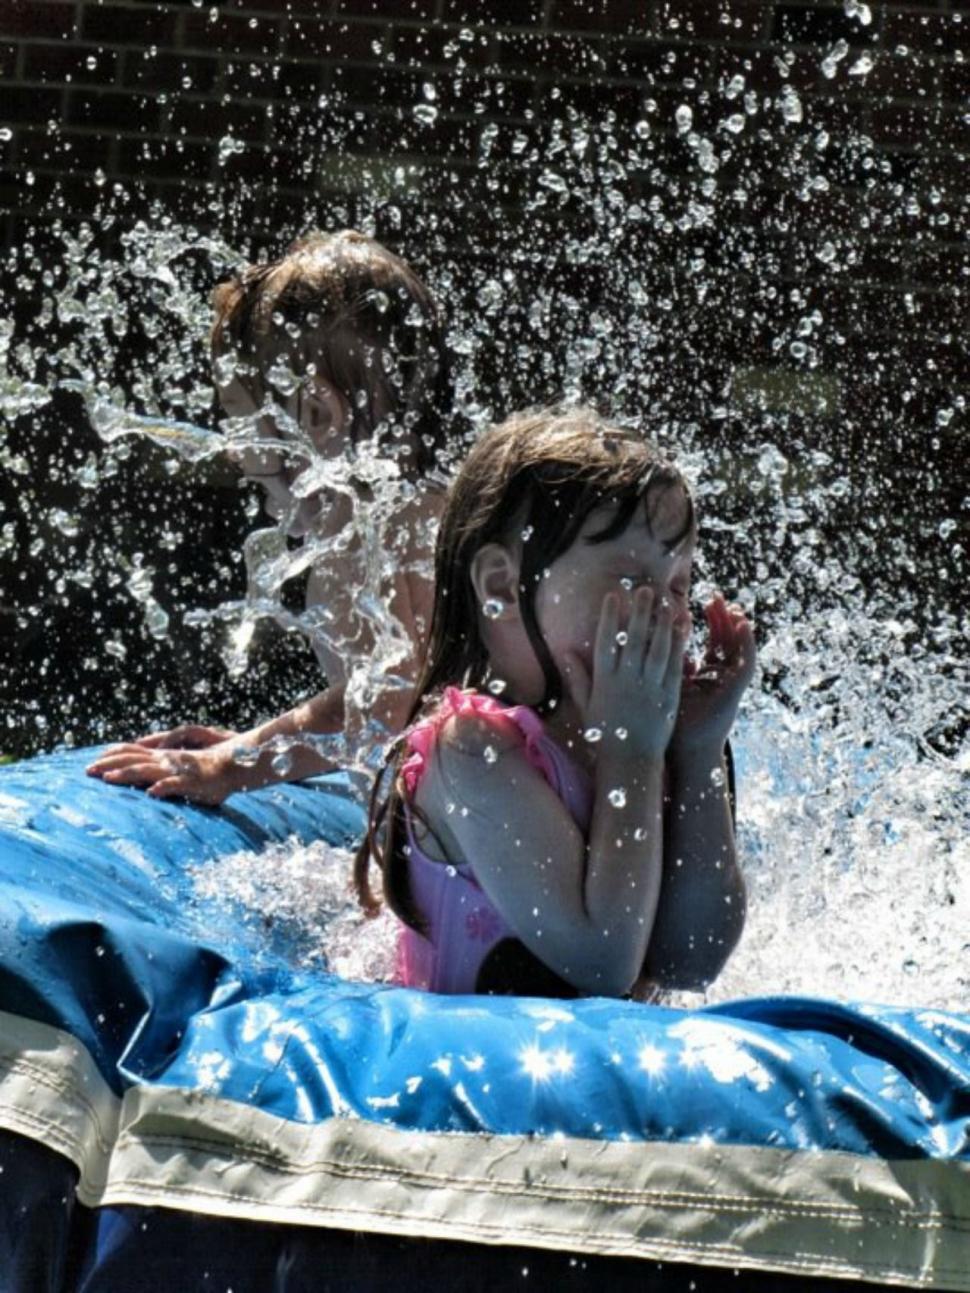 Free Image of Children Splashing In Water  